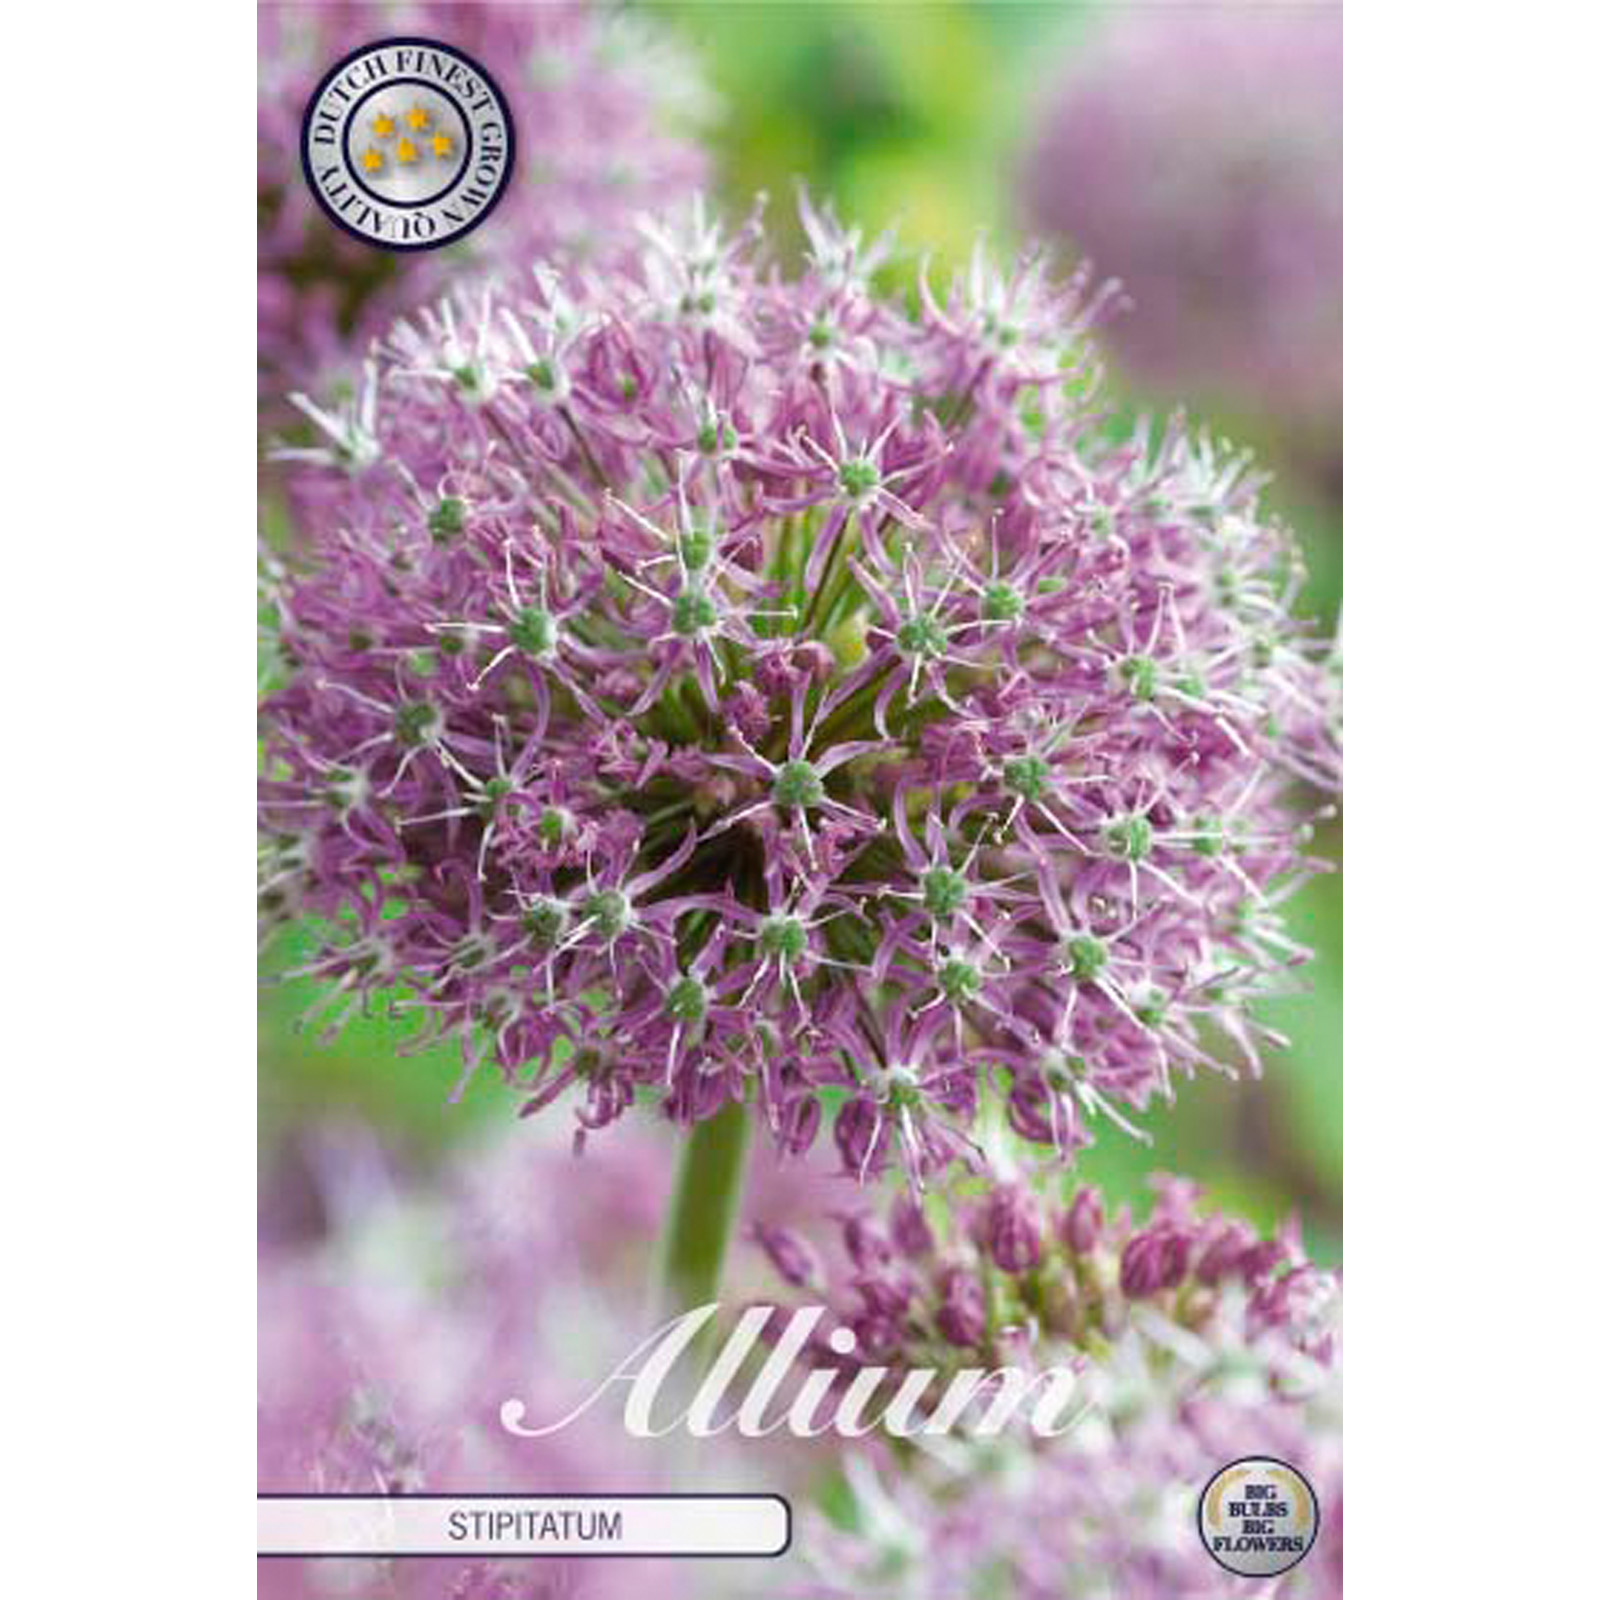 Allium, Stipitatum 2 st